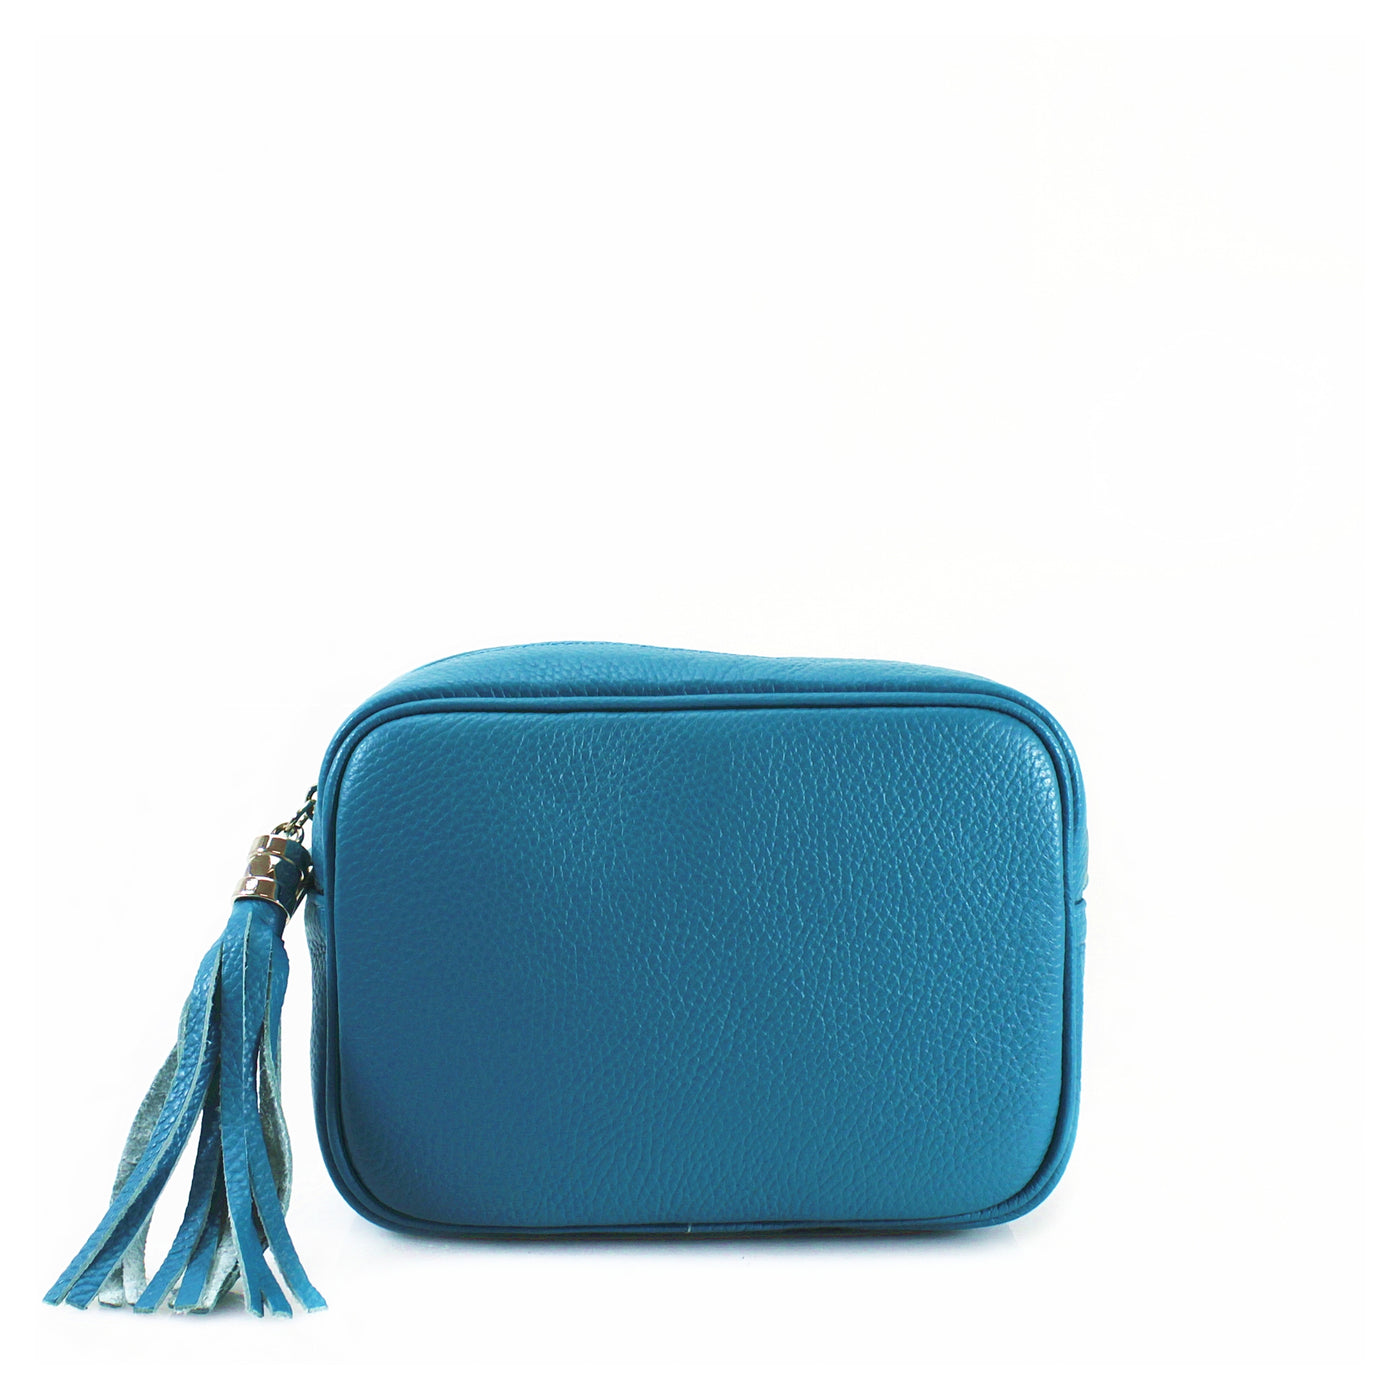 Leather Camera Tassel Handbag - Turquoise